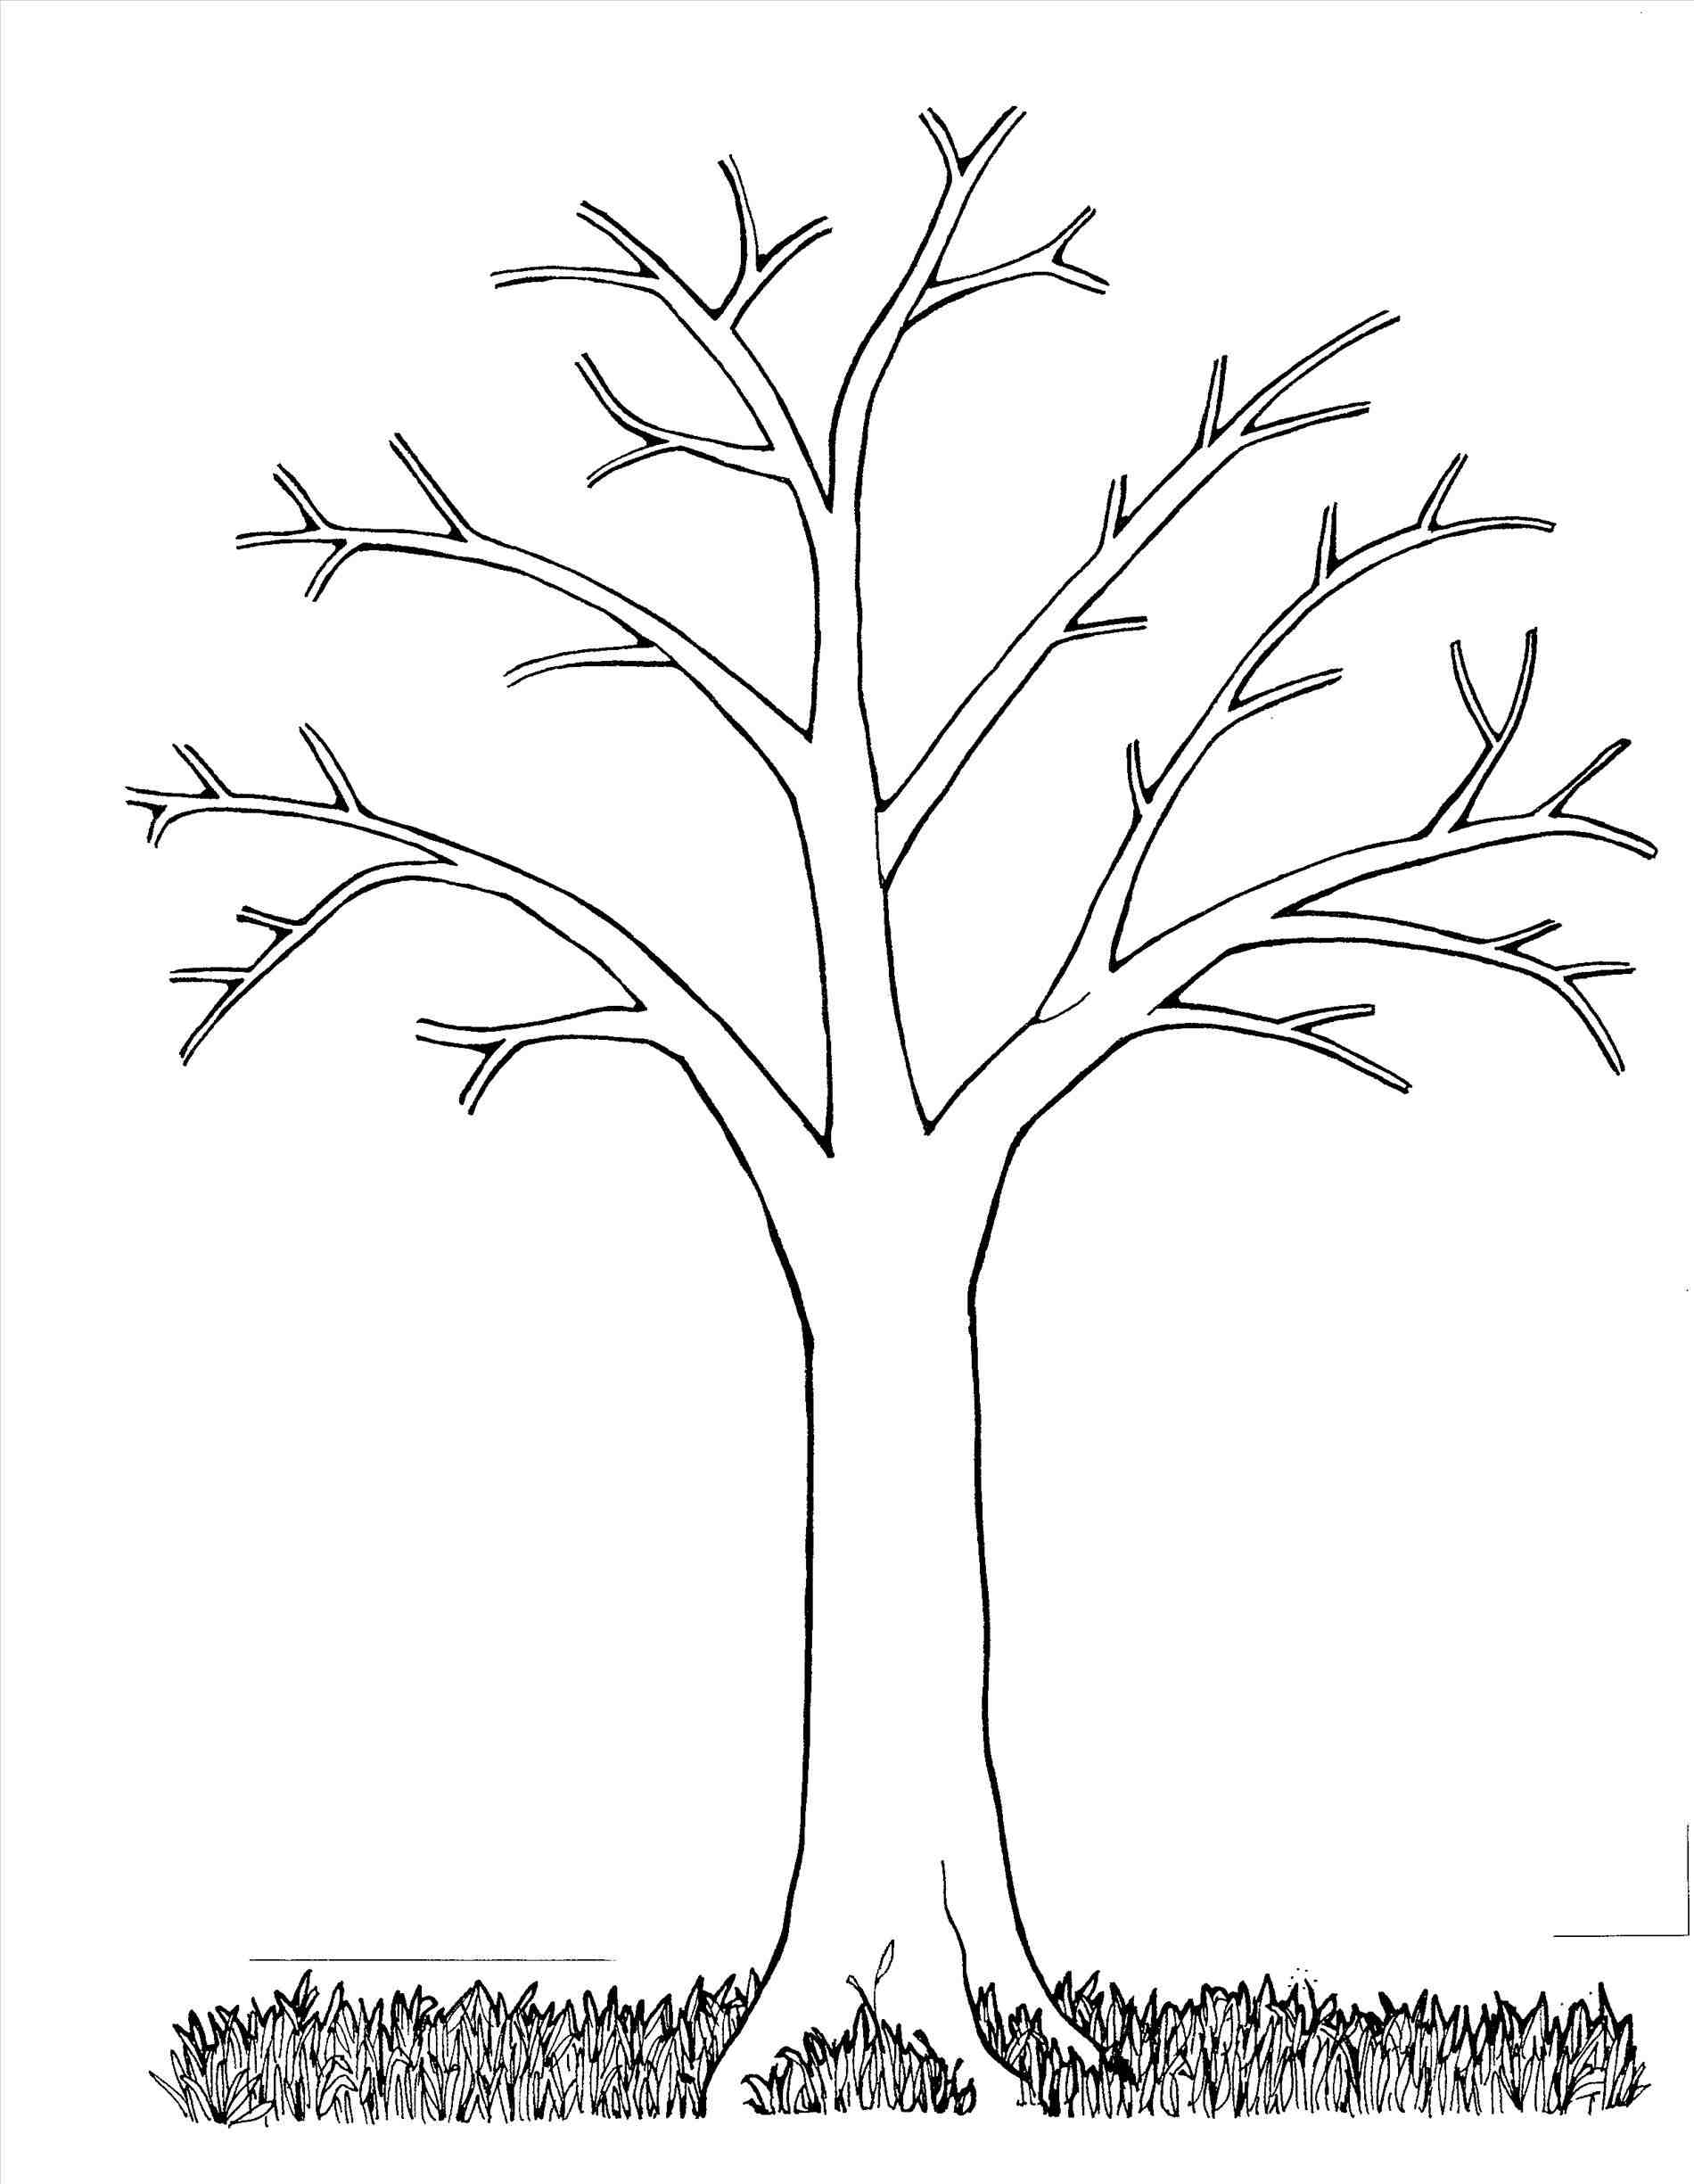 Easy Family Tree Chart